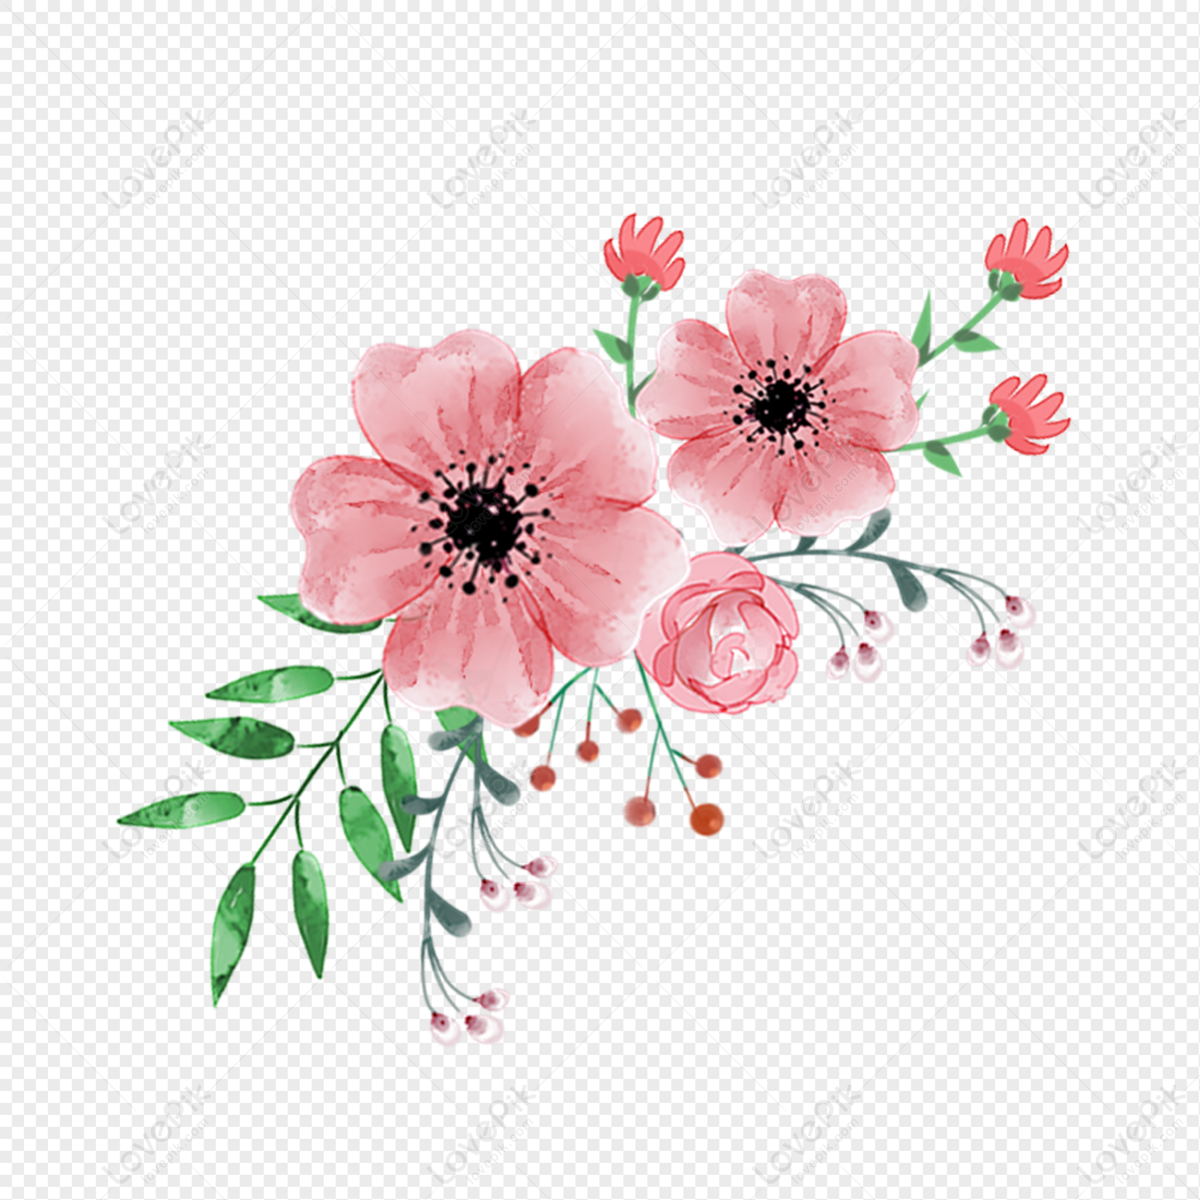 Bó hoa hồng màu hồng nhẹ nhàng và duyên dáng sẽ làm cho không gian sống của bạn trở nên ấm cúng hơn. Những bông hoa được kết thành một bó hoa tuyệt đẹp sẽ làm cho người nhận cảm thấy hạnh phúc và yêu đời hơn. Hãy xem hình ảnh để khám phá thêm về bó hoa hồng màu hồng xinh đẹp này.